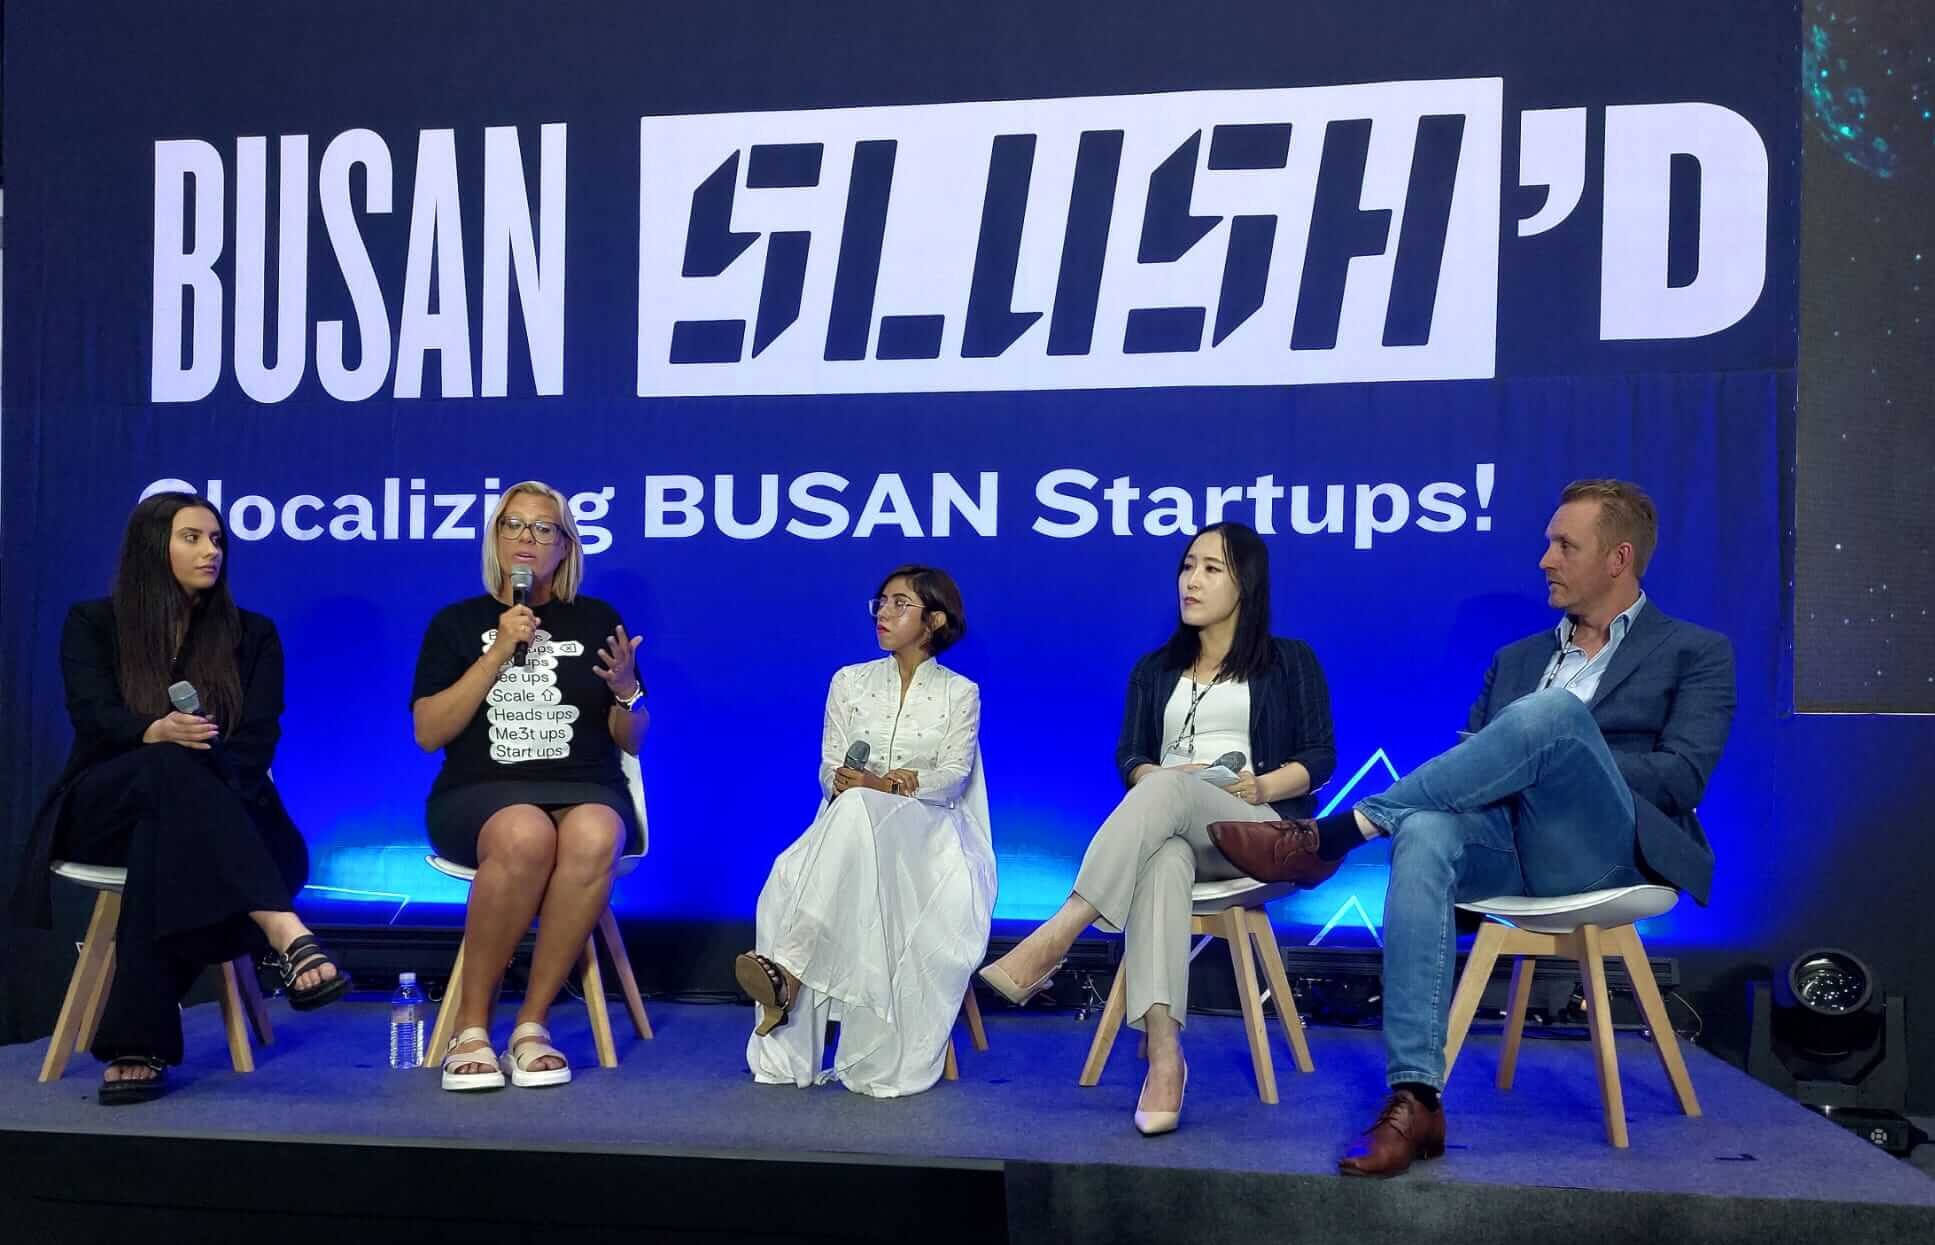 Busan Slush’D: Bringing Local Startups Together to go Global